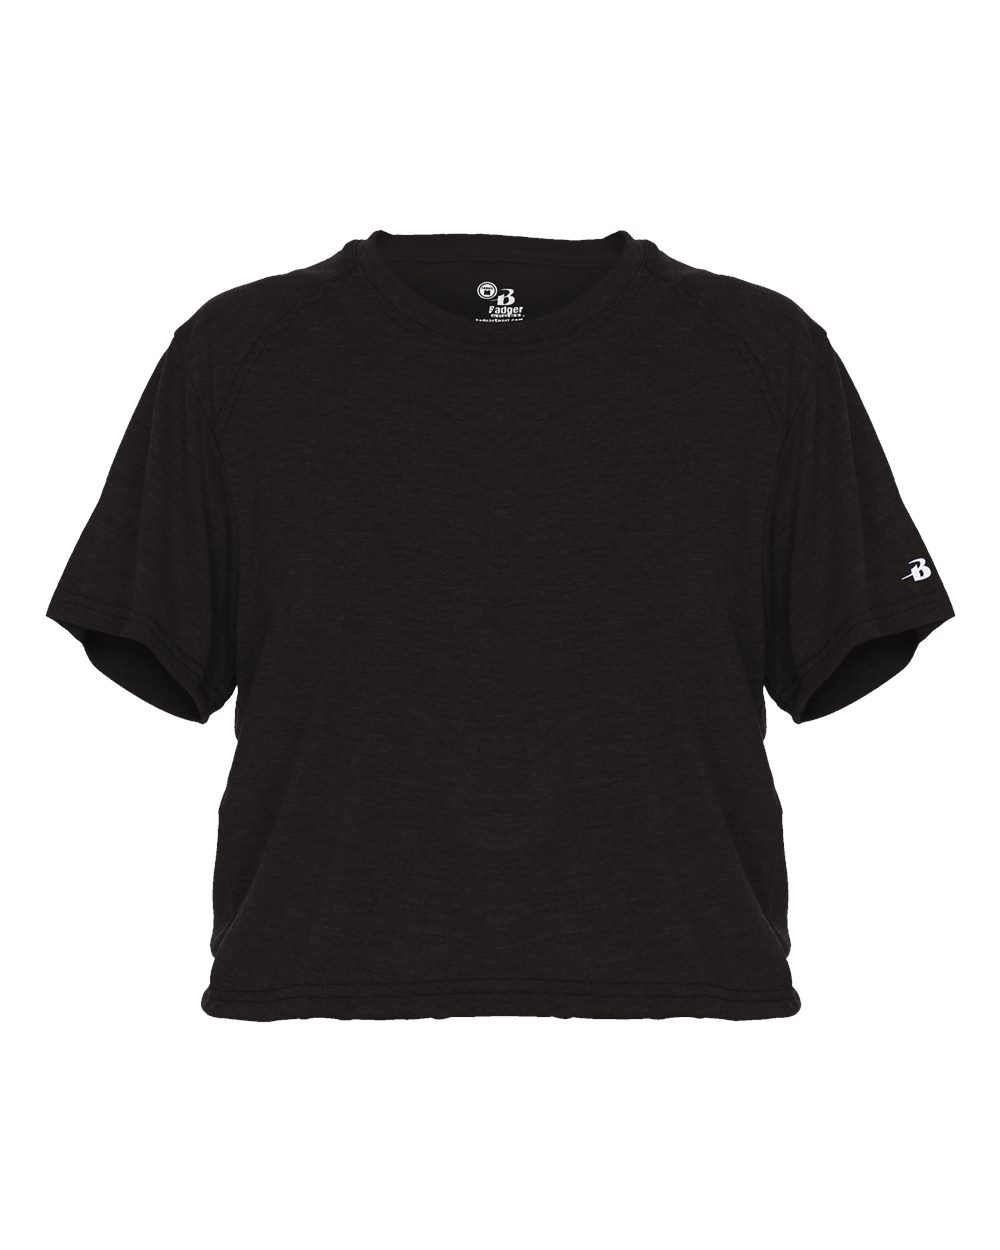 Badger Sport 4963 - Women's Tri-Blend Crop T-Shirt